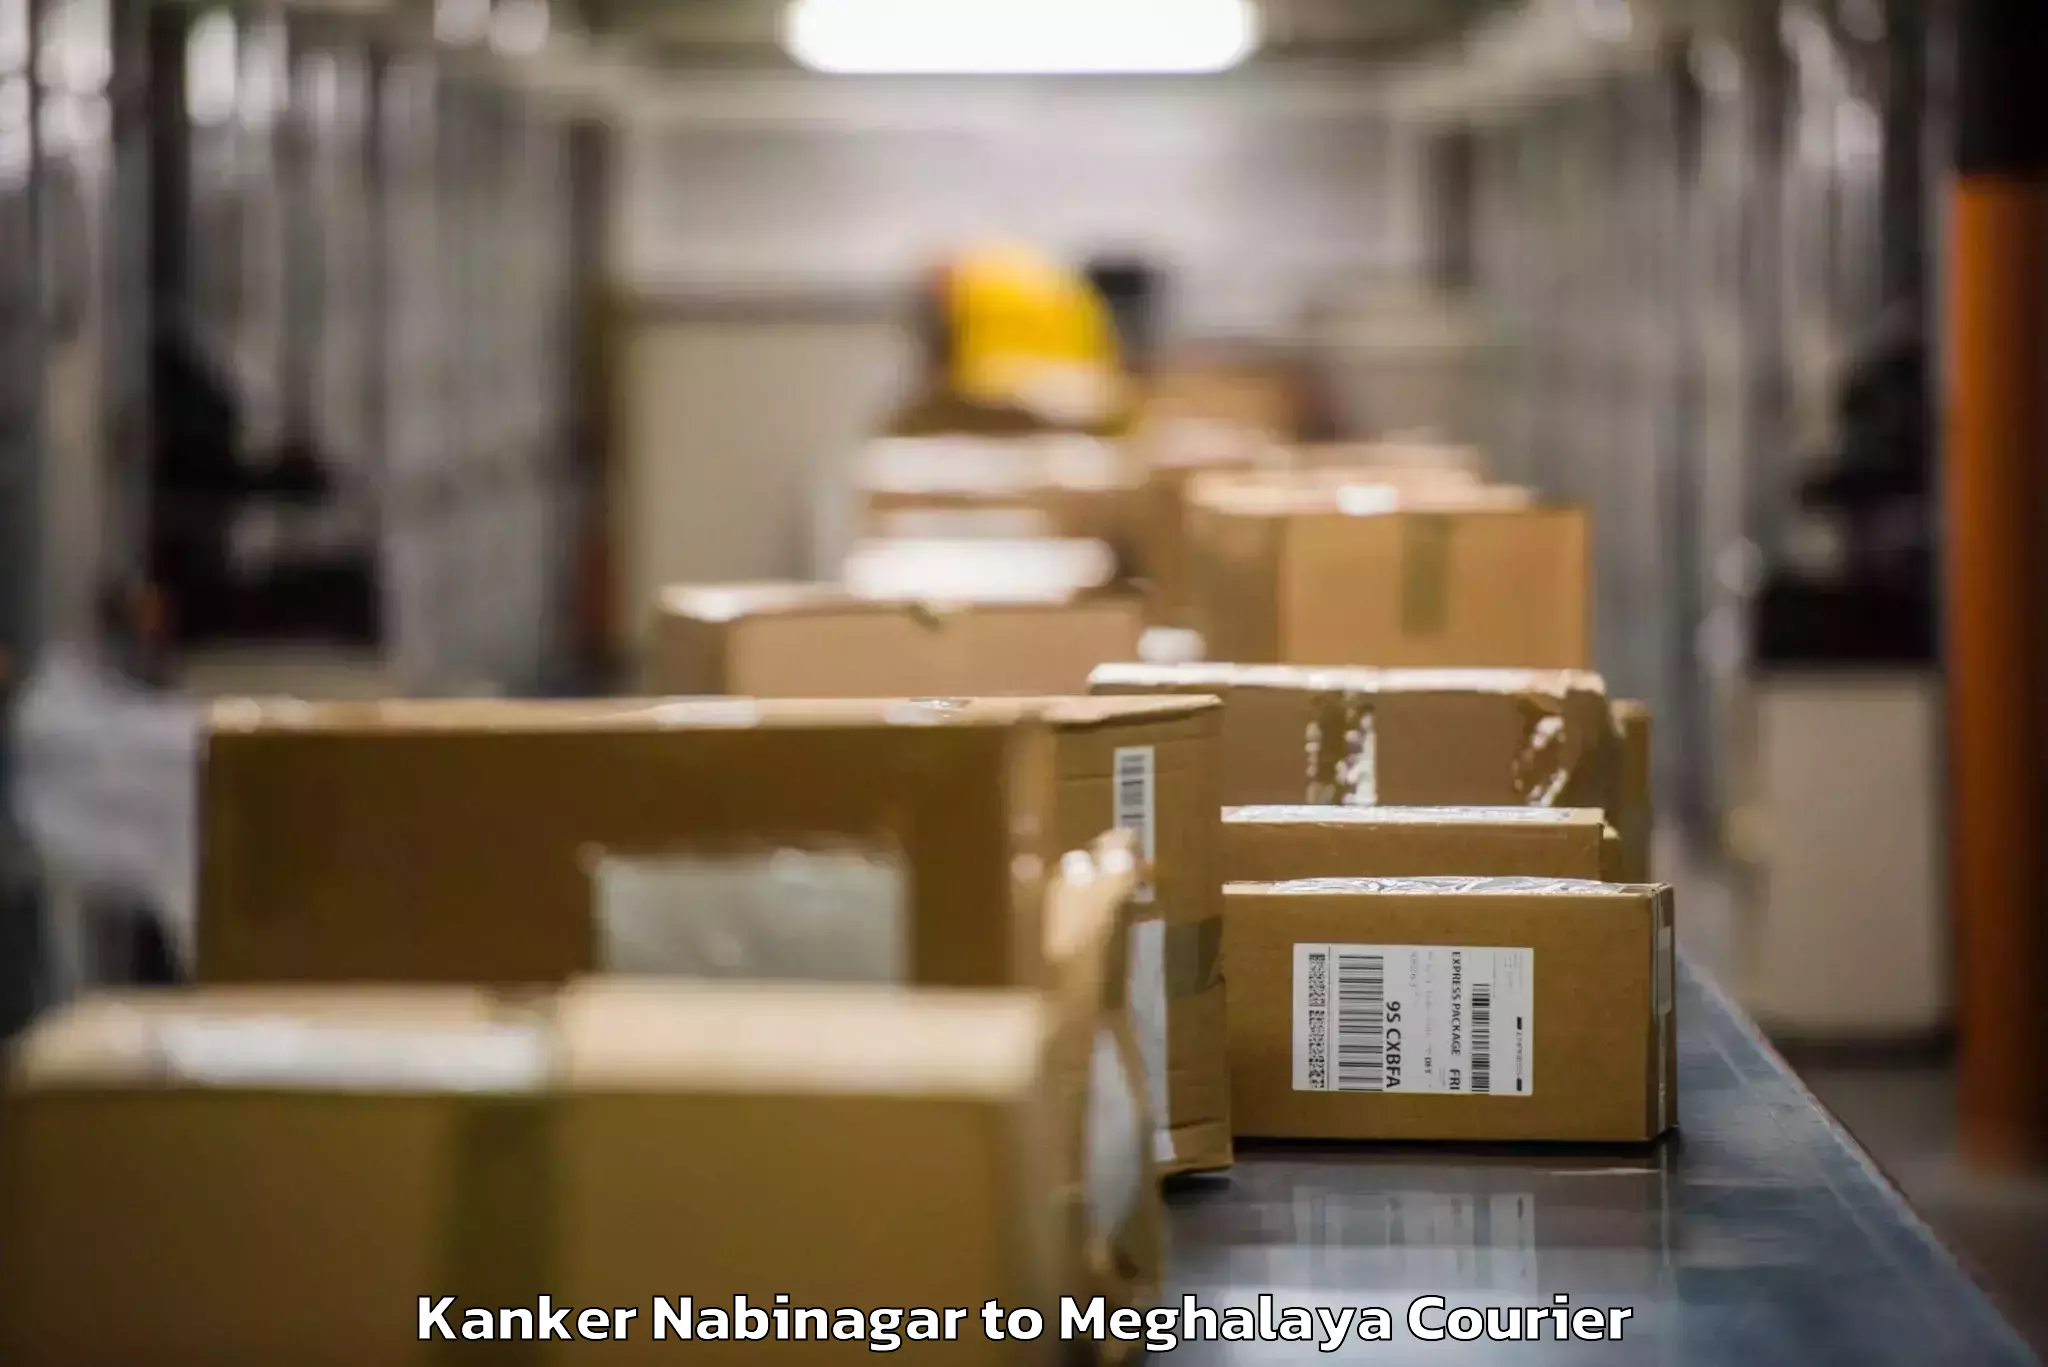 Baggage shipping experts Kanker Nabinagar to Umsaw